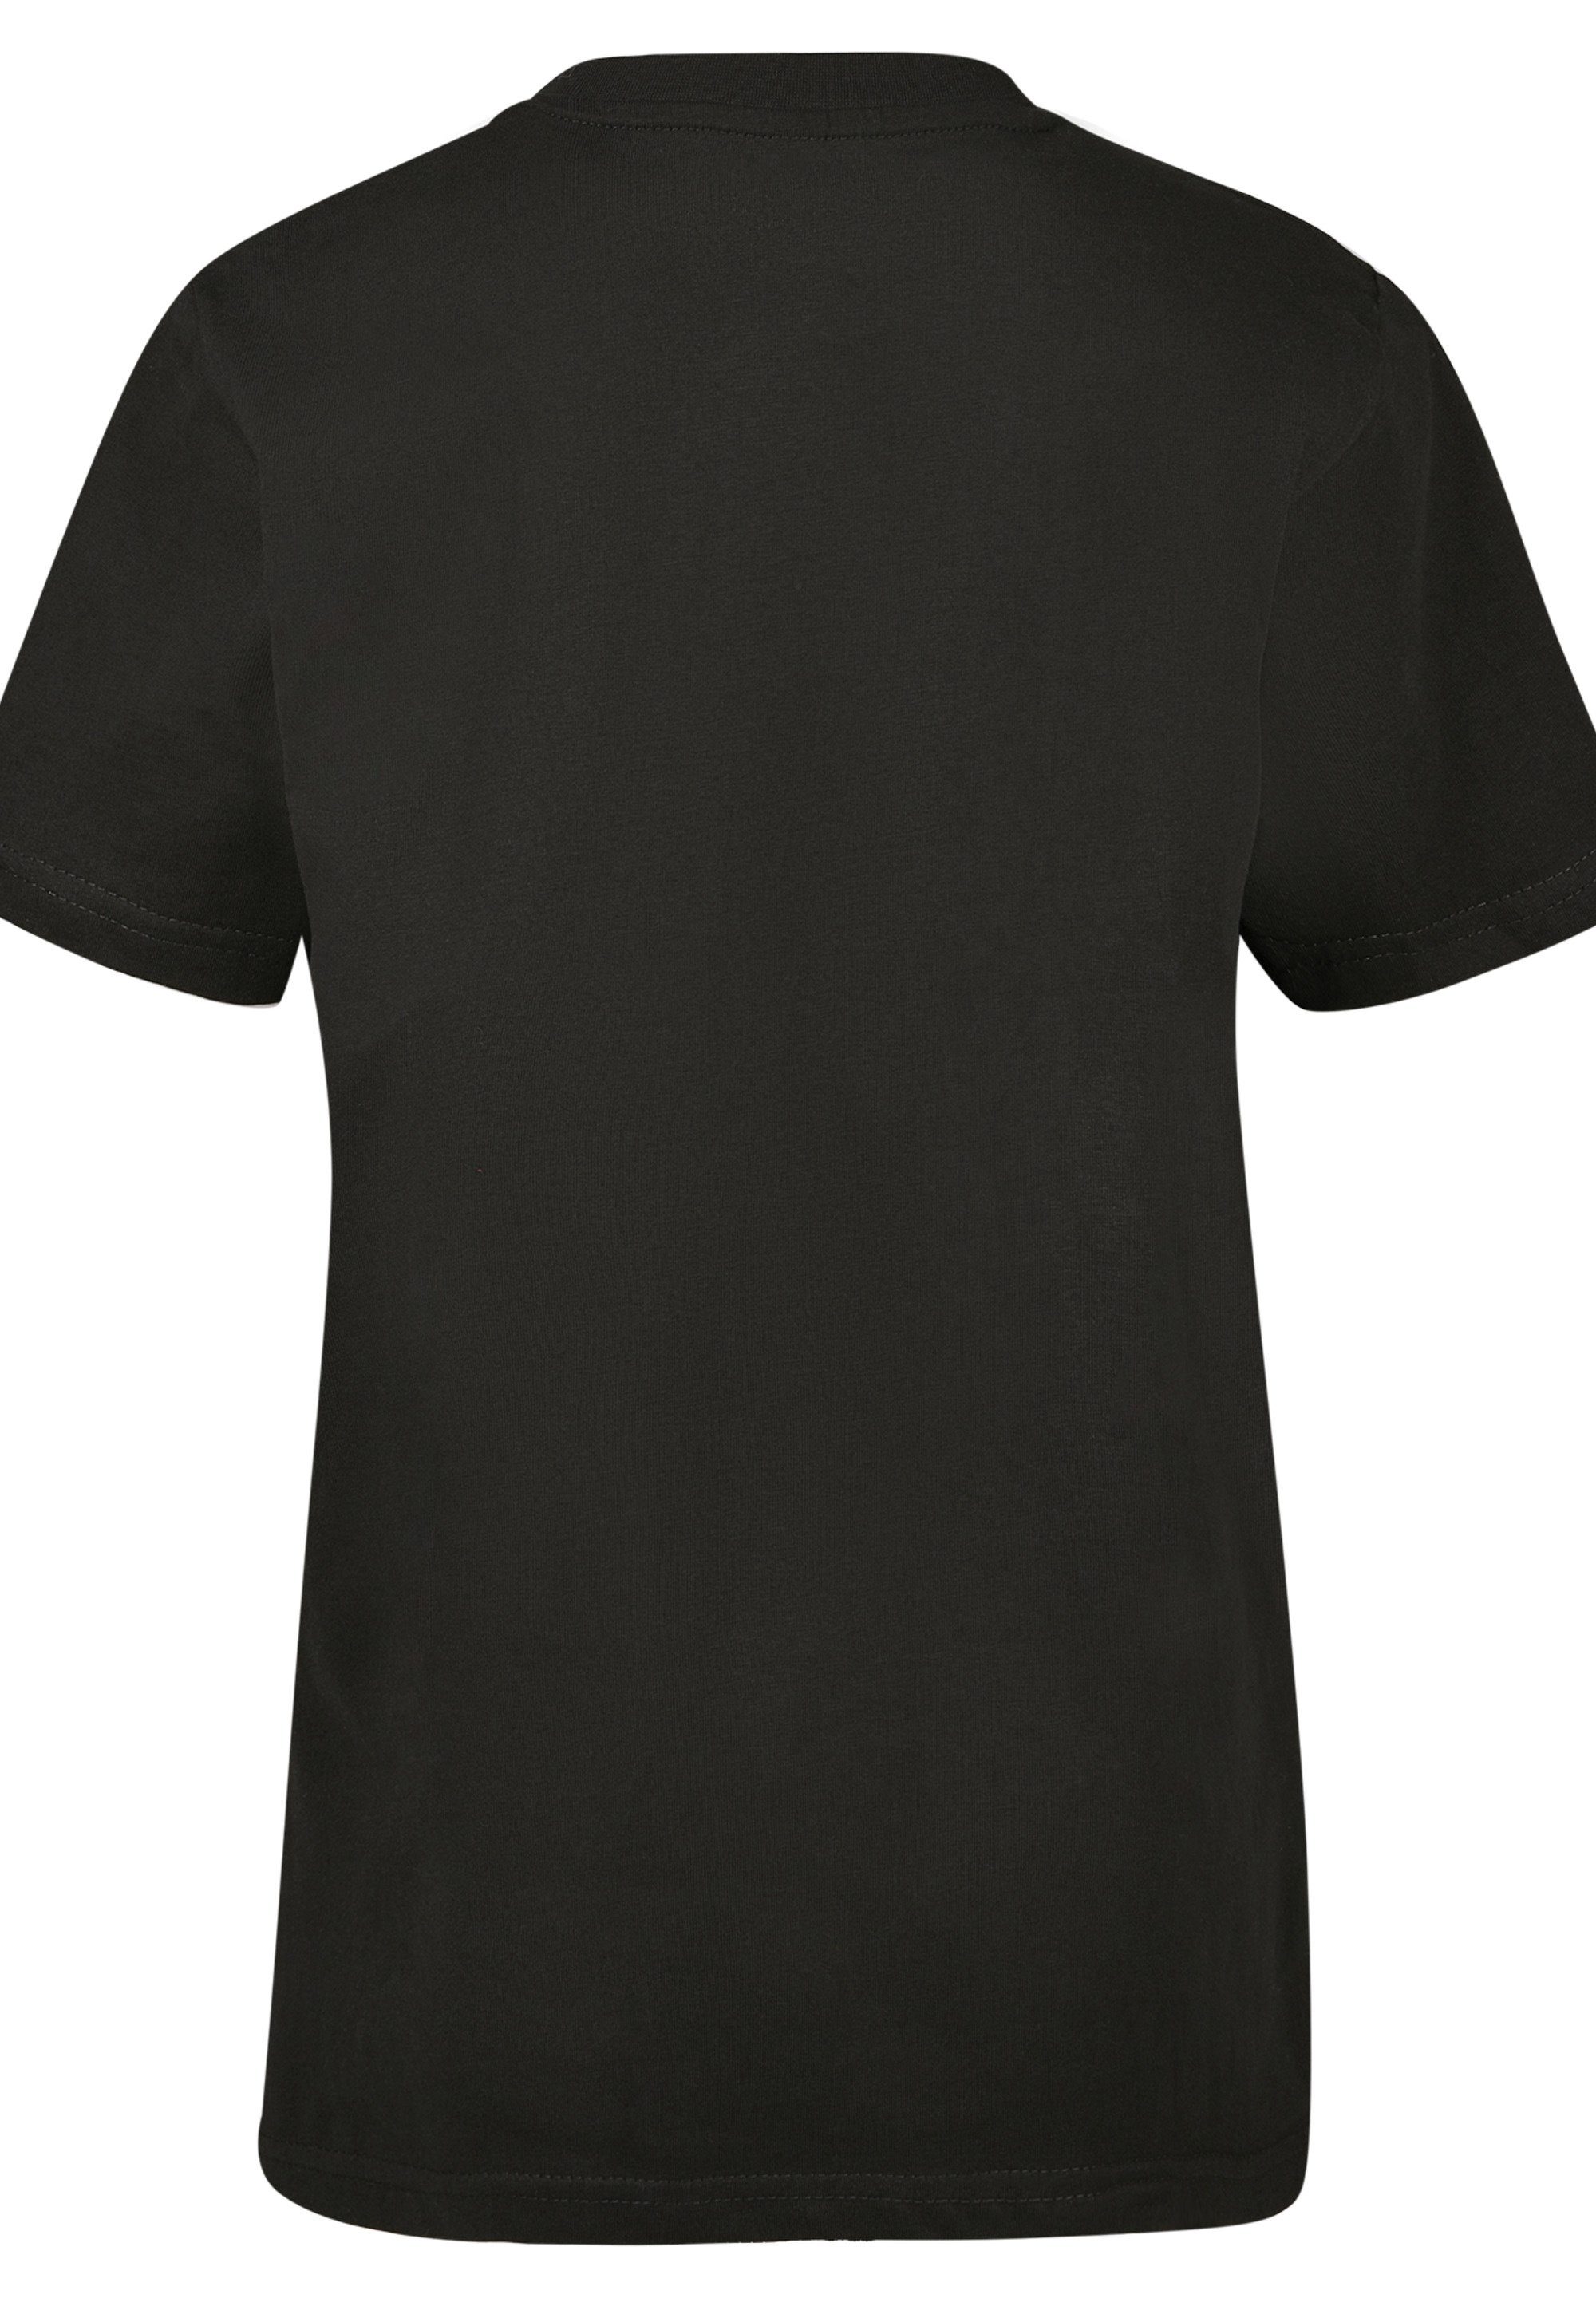 Star F4NT4STIC Wars Merch,Jungen,Mädchen,Bedruckt Unisex Stormtrooper Kinder,Premium schwarz T-Shirt